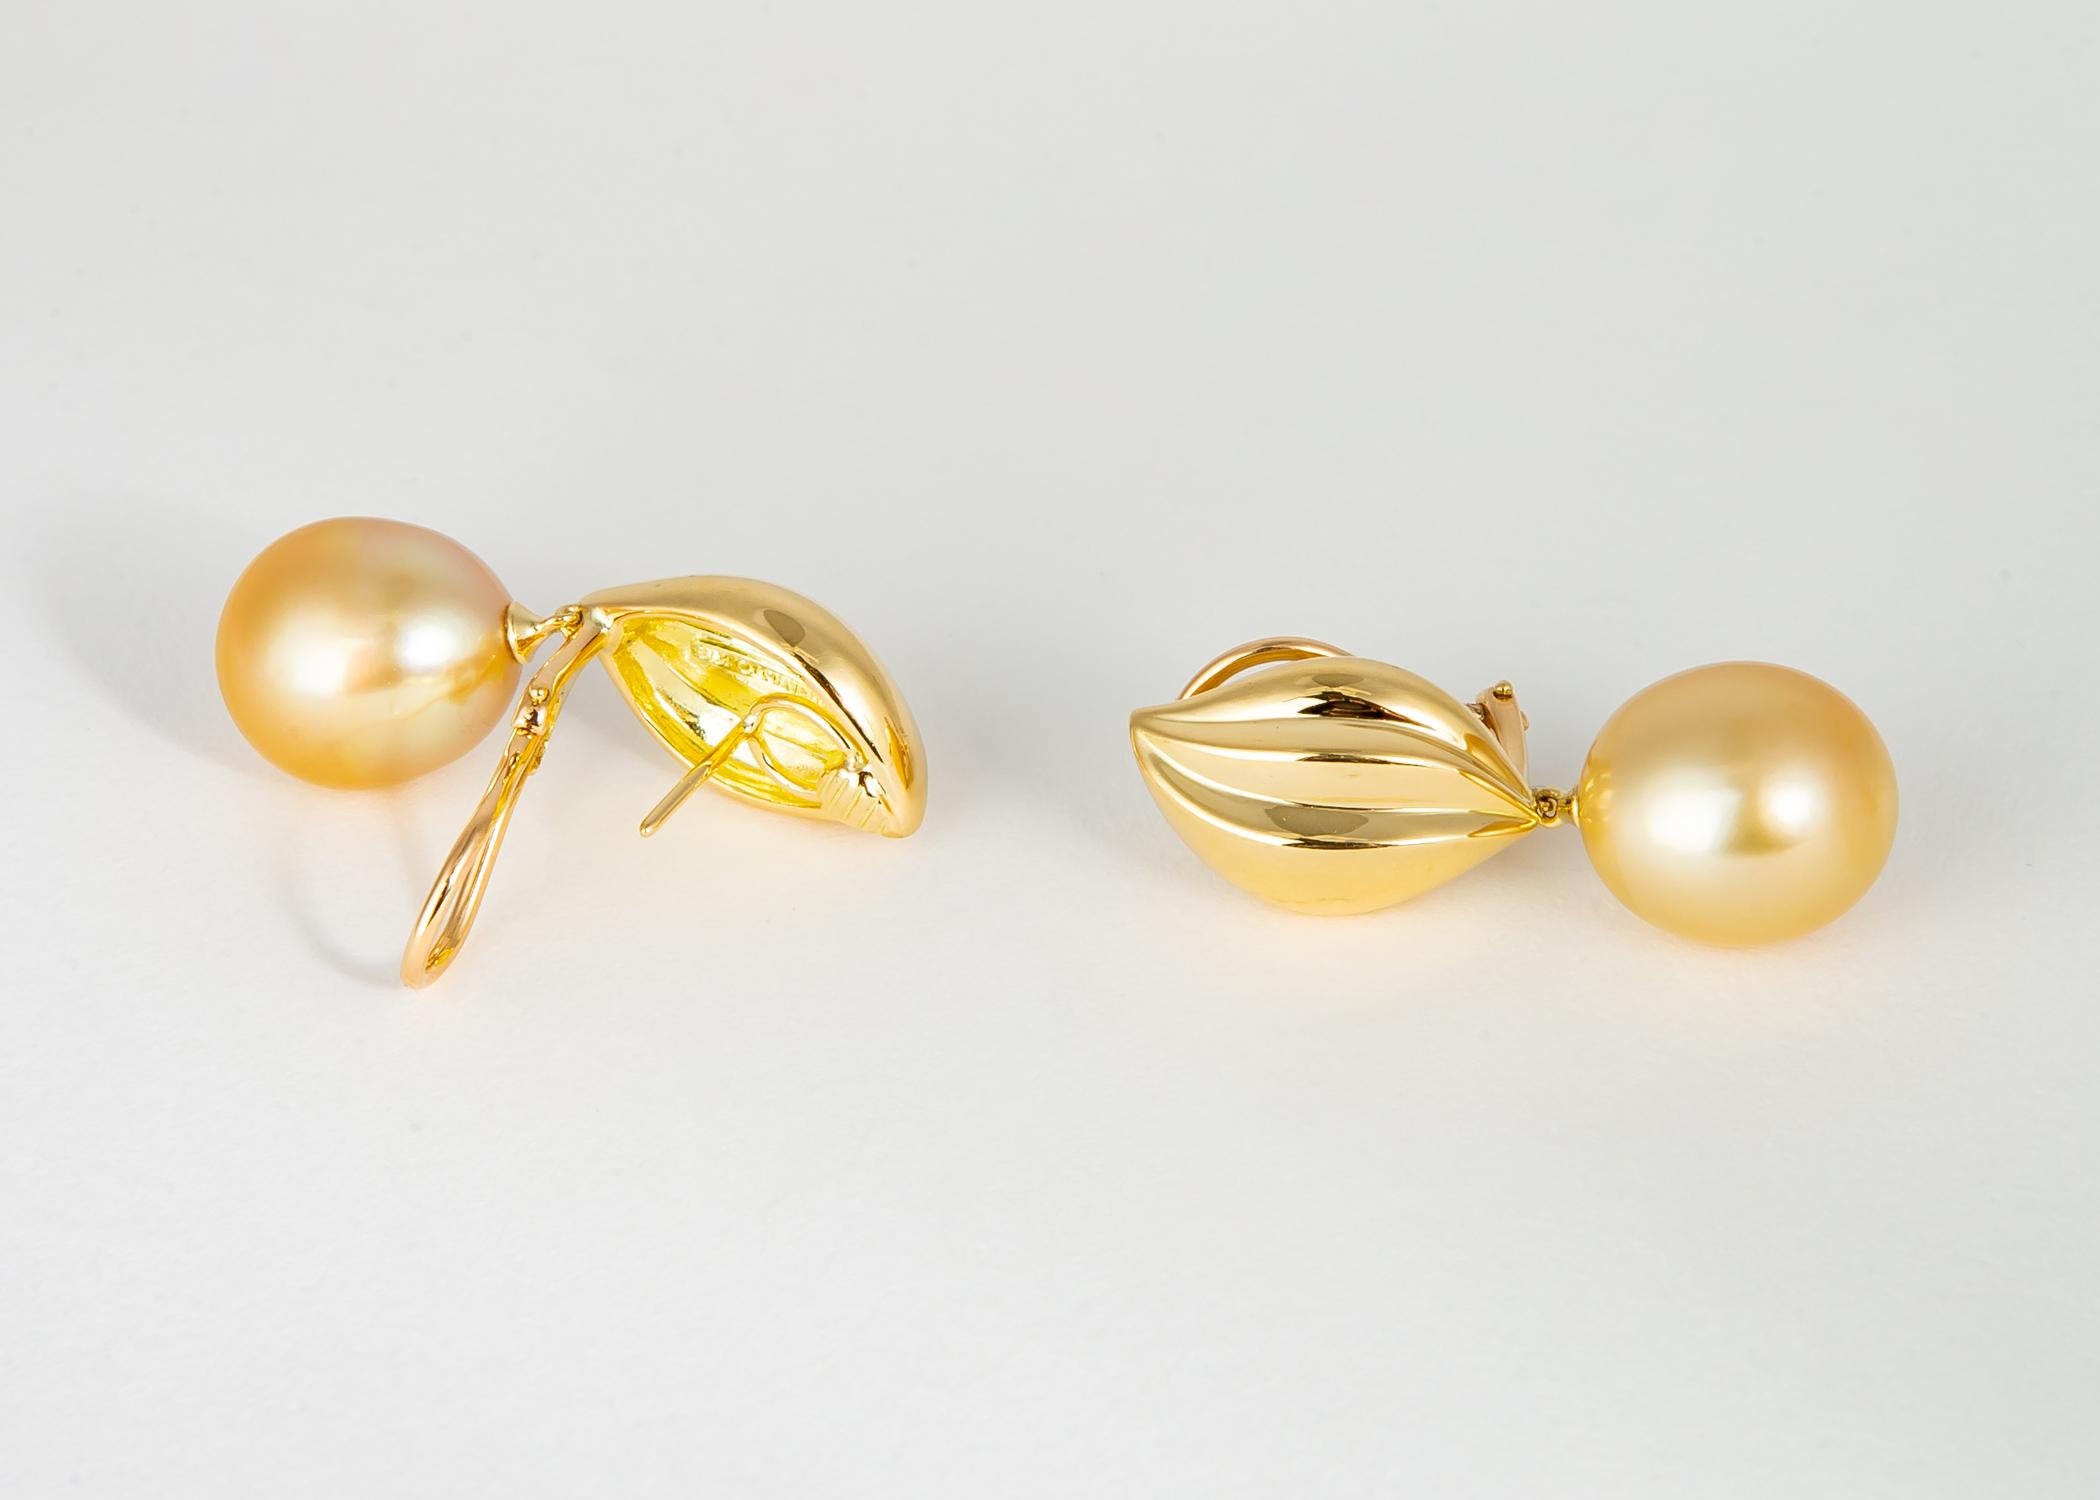 Mikimoto bietet eine unermüdliche Hingabe für Qualitätsperlenschmuck. Dieses wunderschöne Paar goldener Südseeperlen (14,6 x 12,9 mm) hängt an eleganten 18-karätigen Goldspitzen. Einfach schick !!! 1 1/3 Zoll in der Länge. 